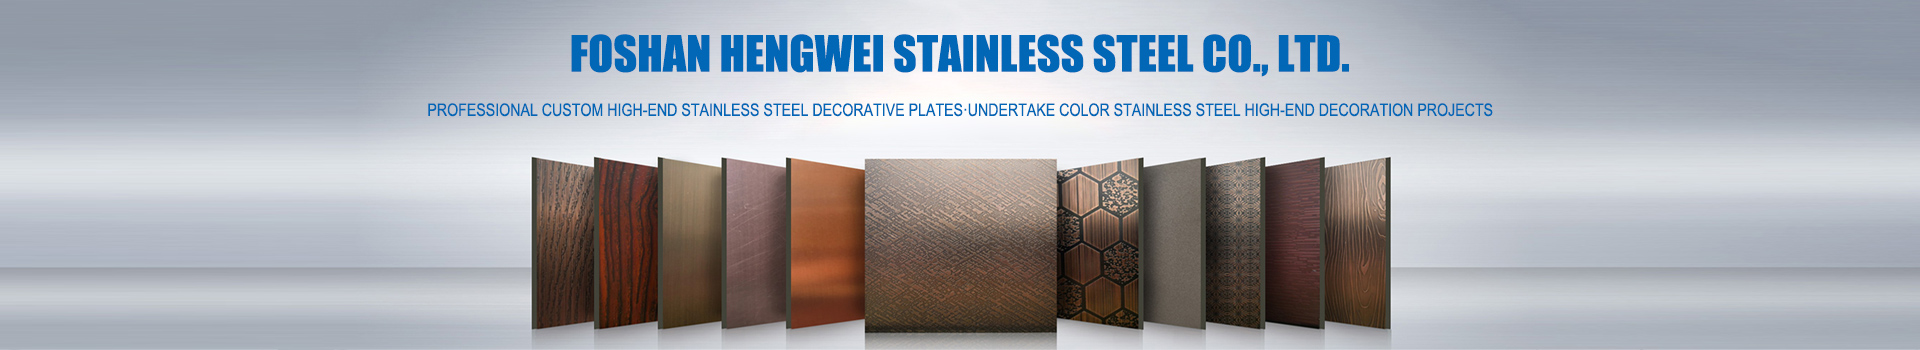 Fatshan hw stainless steel Co., Ltd